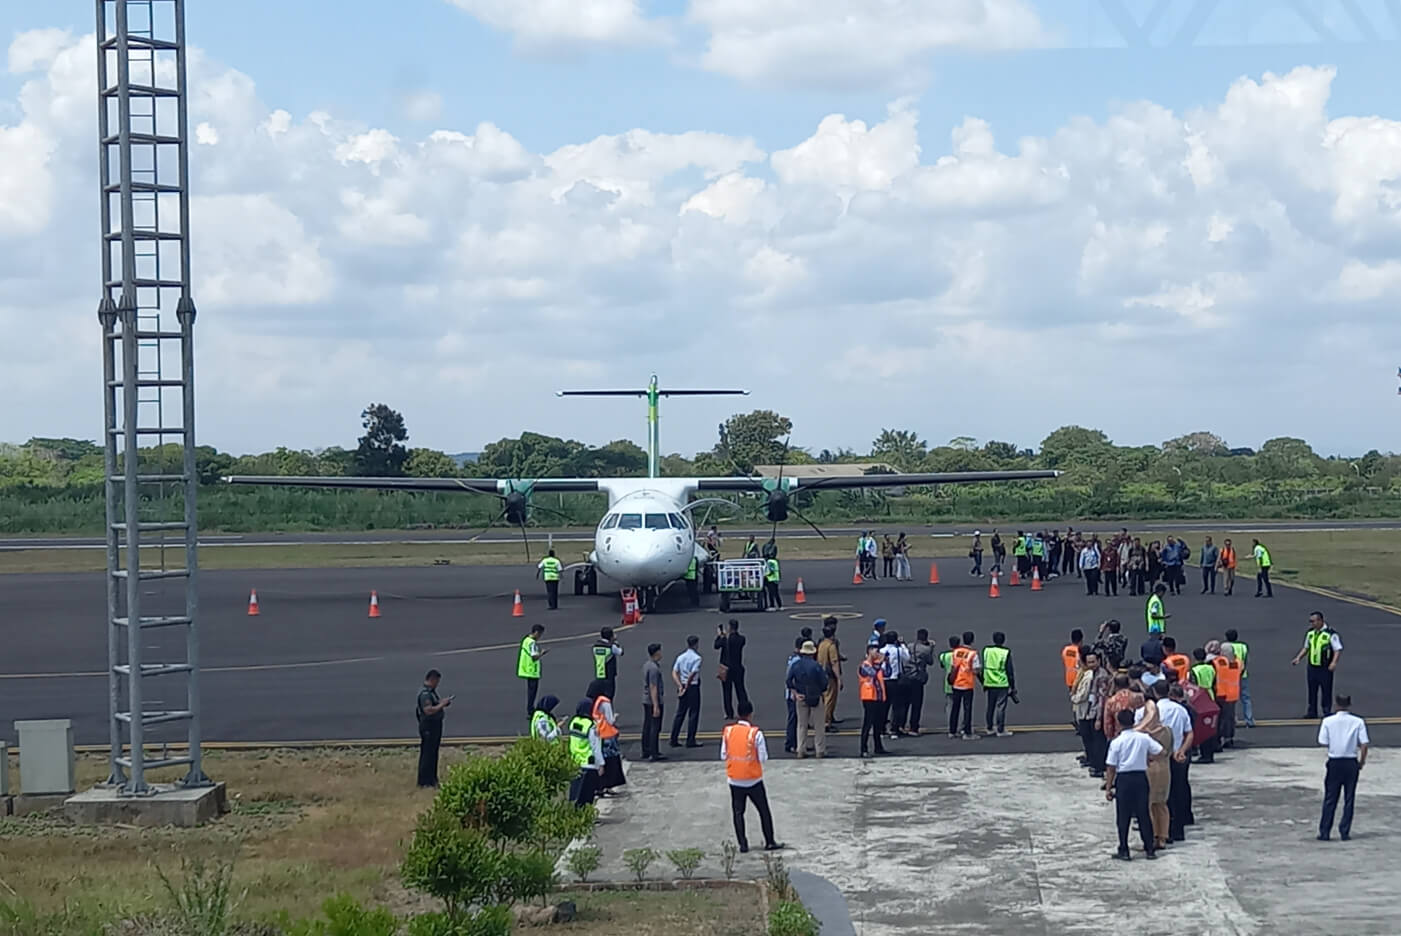 Hari ini Penerbangan Perdana Citilink dari Bandara Wiriadinata Tasikmalaya ke Jakarta